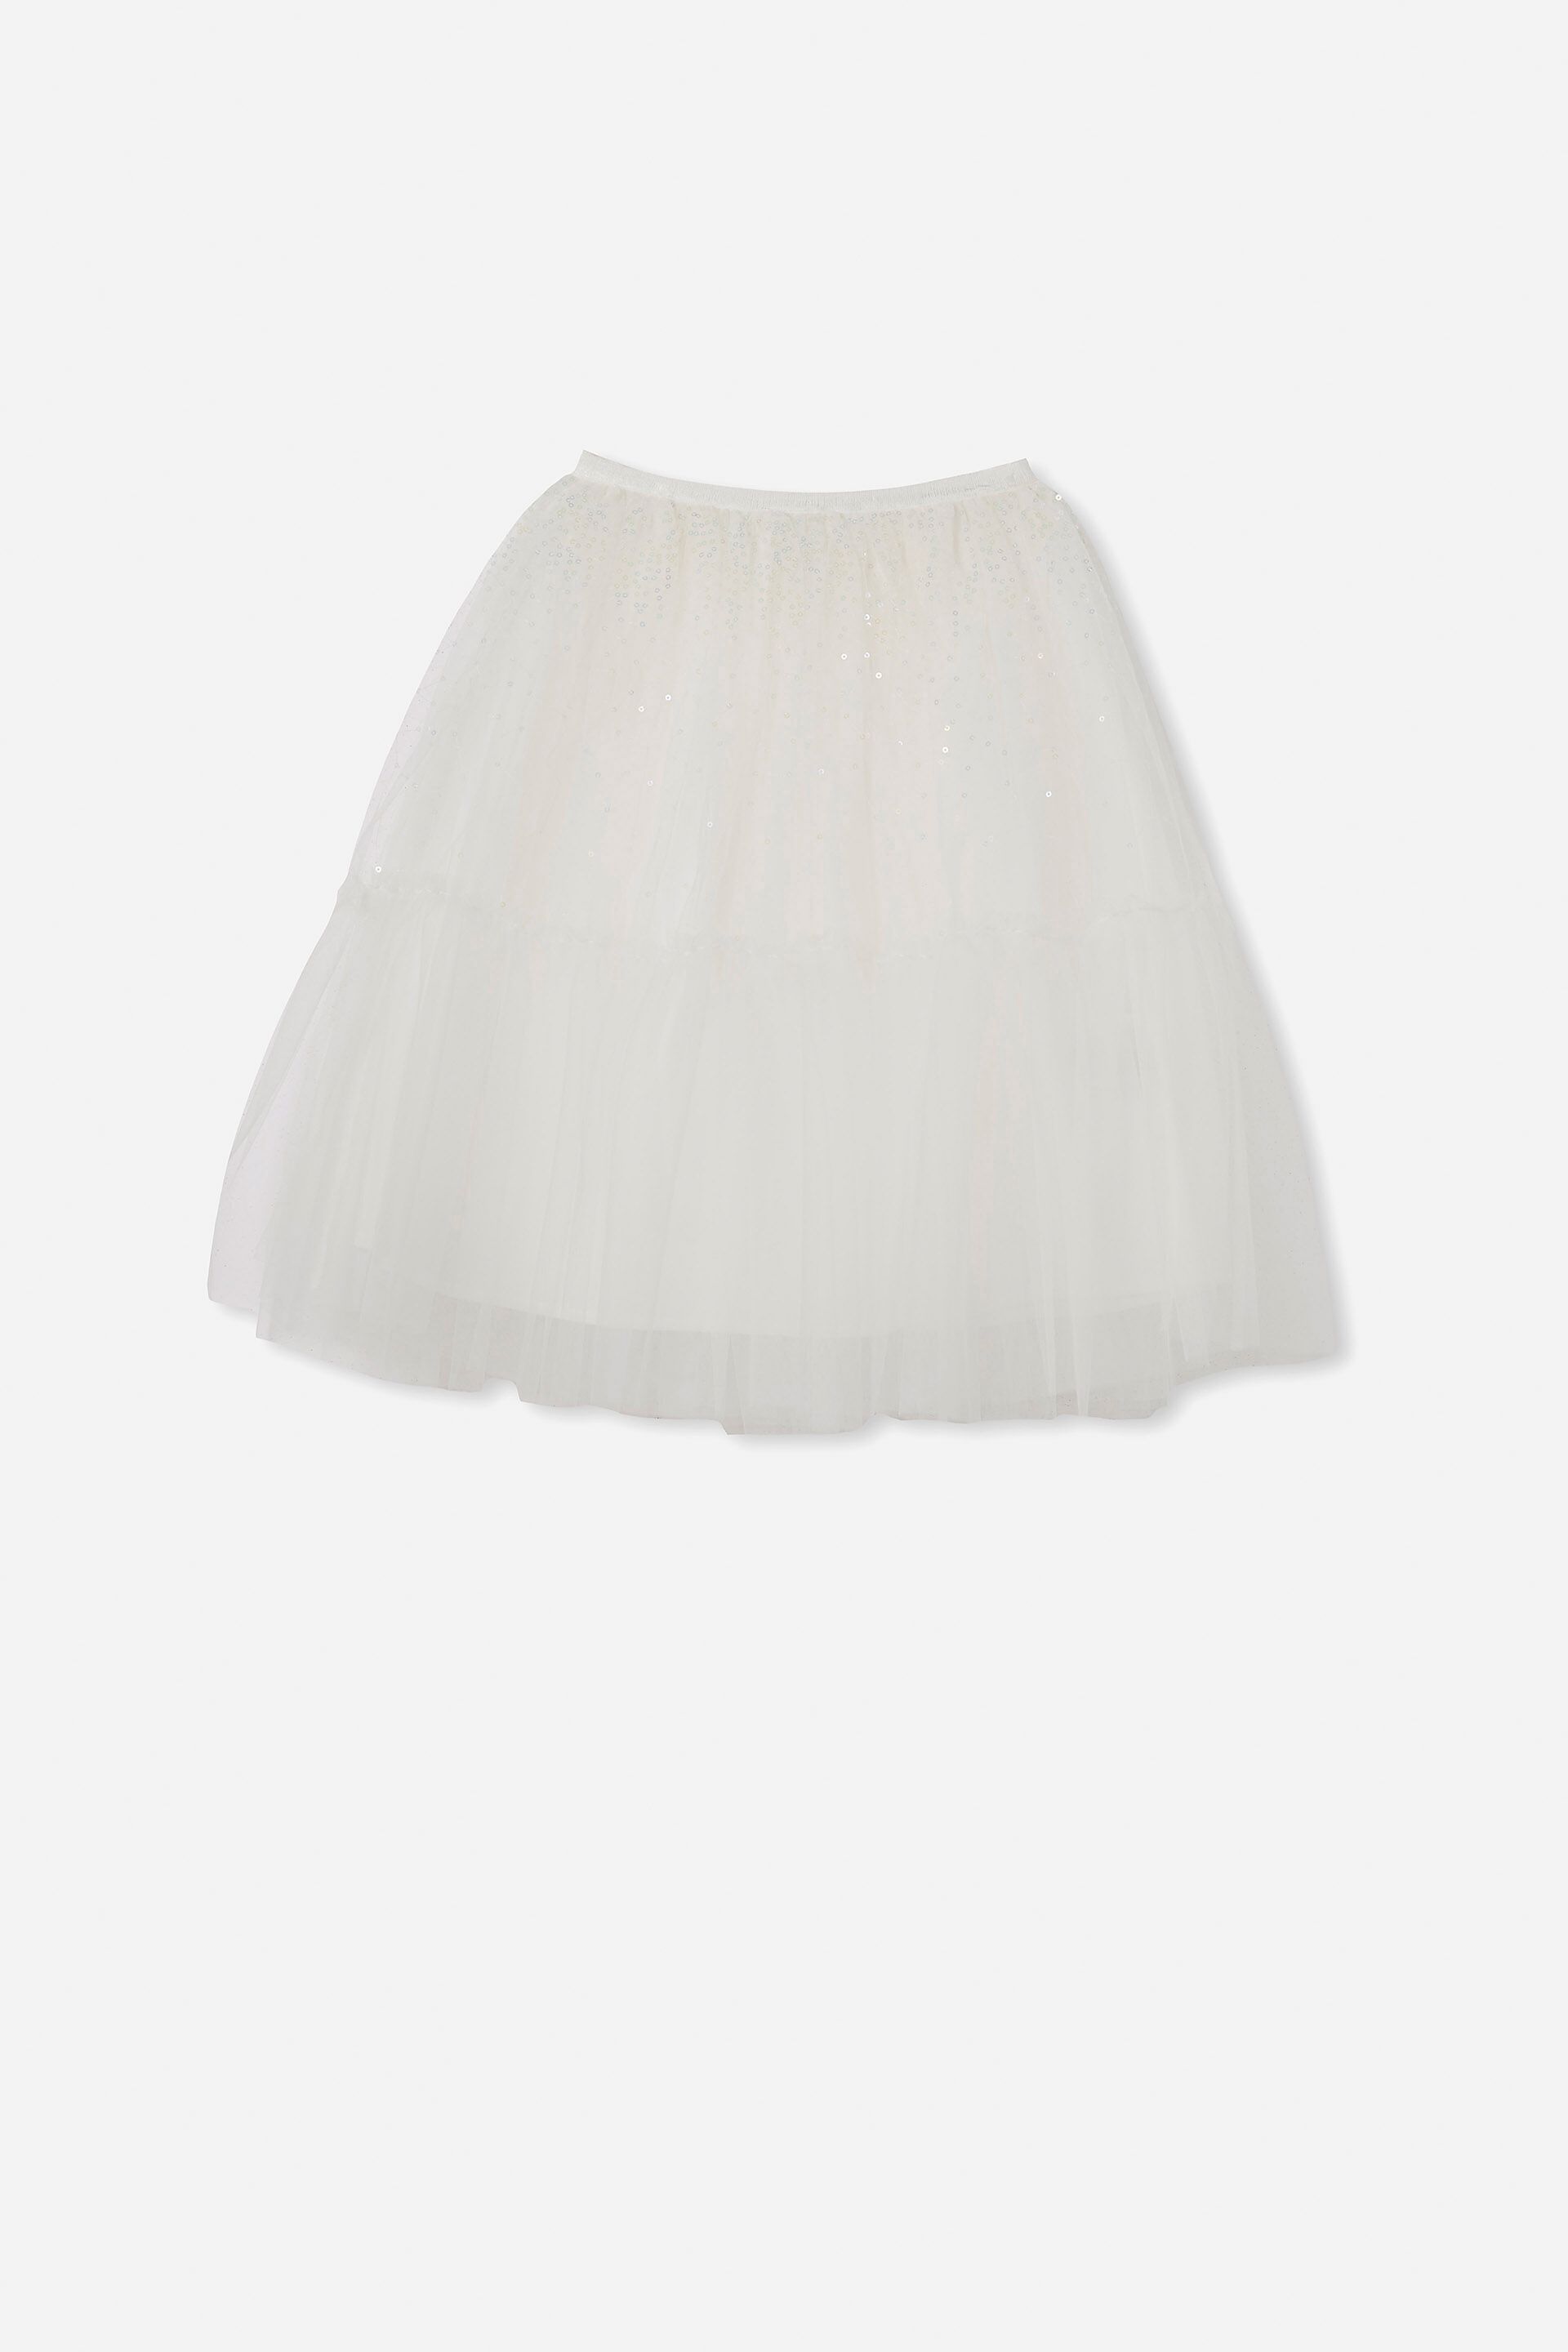 Girls 2-14 Shorts & Skirts | Trixiebelle Dress Up Skirt - QU27010